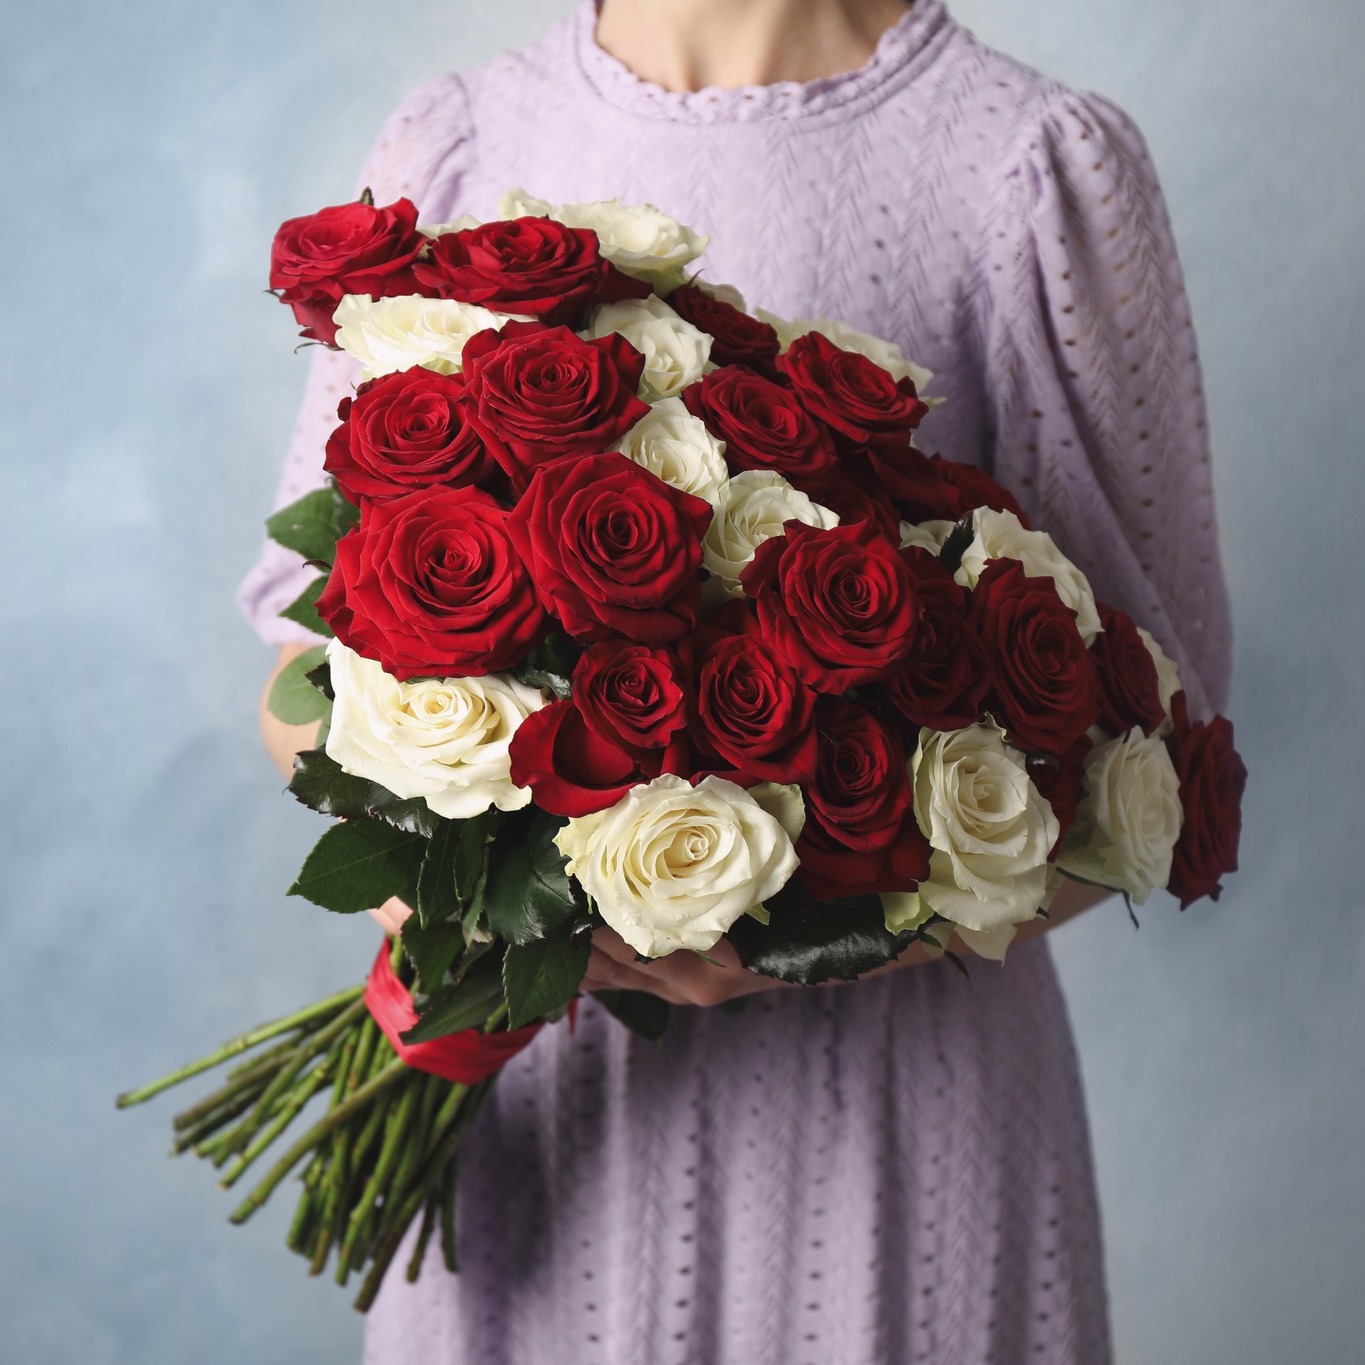 Flowers.ua – сервис доставки цветов и подарков в Одессе и по всей Украине.